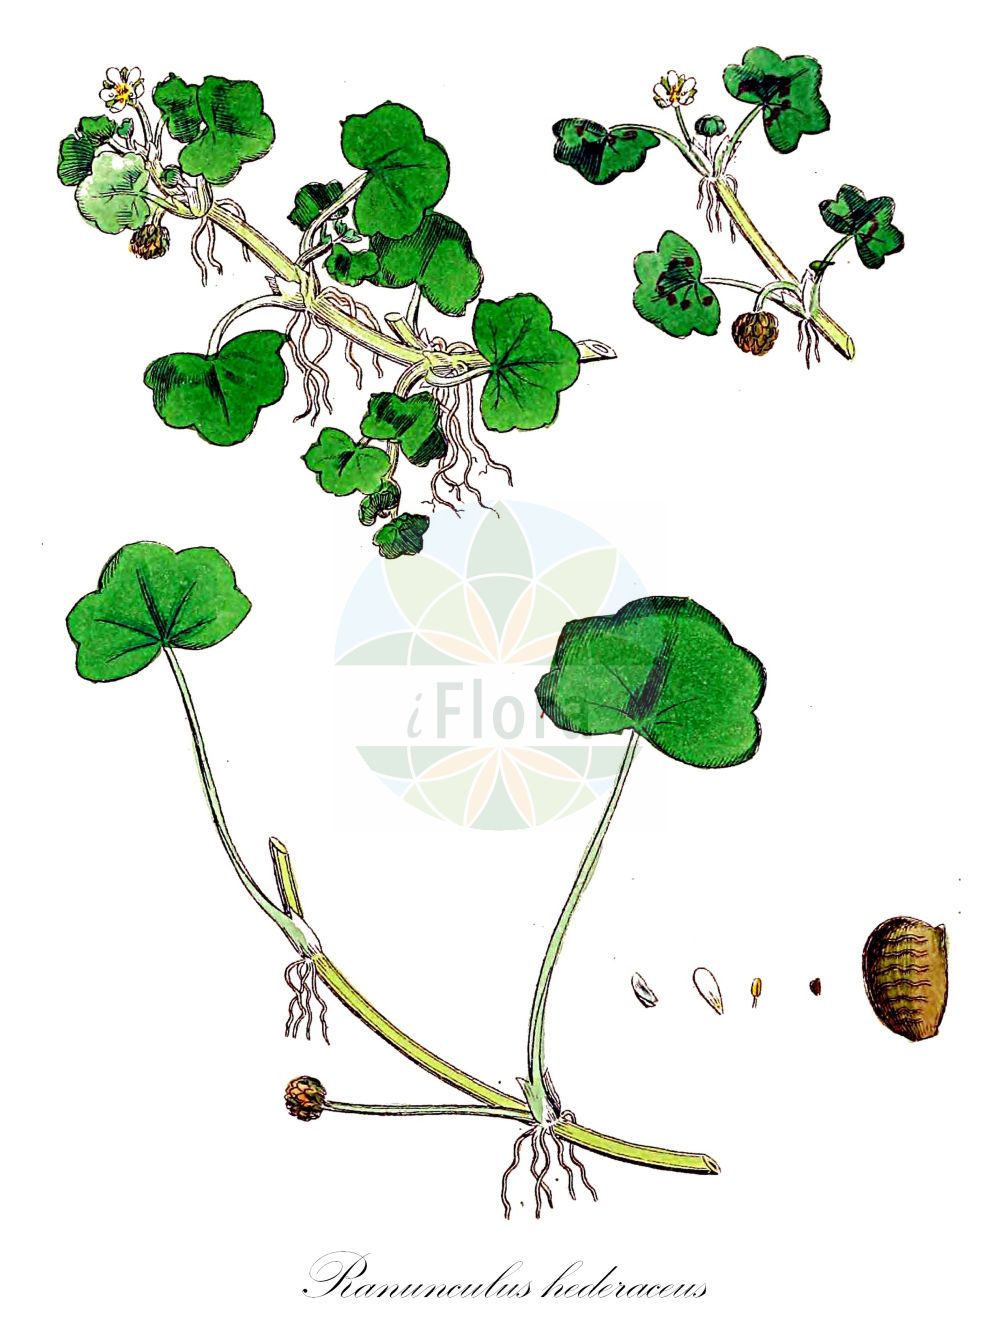 Historische Abbildung von Ranunculus hederaceus (Efeublättriger Wasserhahnenfuß - Ivy-leaved Crowfoot). Das Bild zeigt Blatt, Bluete, Frucht und Same. ---- Historical Drawing of Ranunculus hederaceus (Efeublättriger Wasserhahnenfuß - Ivy-leaved Crowfoot). The image is showing leaf, flower, fruit and seed.(Ranunculus hederaceus,Efeublättriger Wasserhahnenfuß,Ivy-leaved Crowfoot,Batrachium hederaceum,Ranunculus hederaceus,Efeublaettriger Wasserhahnenfuss,Efeu-Wasser-Hahnenfuss,Ivy-leaved Crowfoot,Ivy Buttercup,Ranunculus,Hahnenfuß,Buttercup,Ranunculaceae,Hahnenfußgewächse,Buttercup family,Blatt,Bluete,Frucht,Same,leaf,flower,fruit,seed,Sowerby (1790-1813))